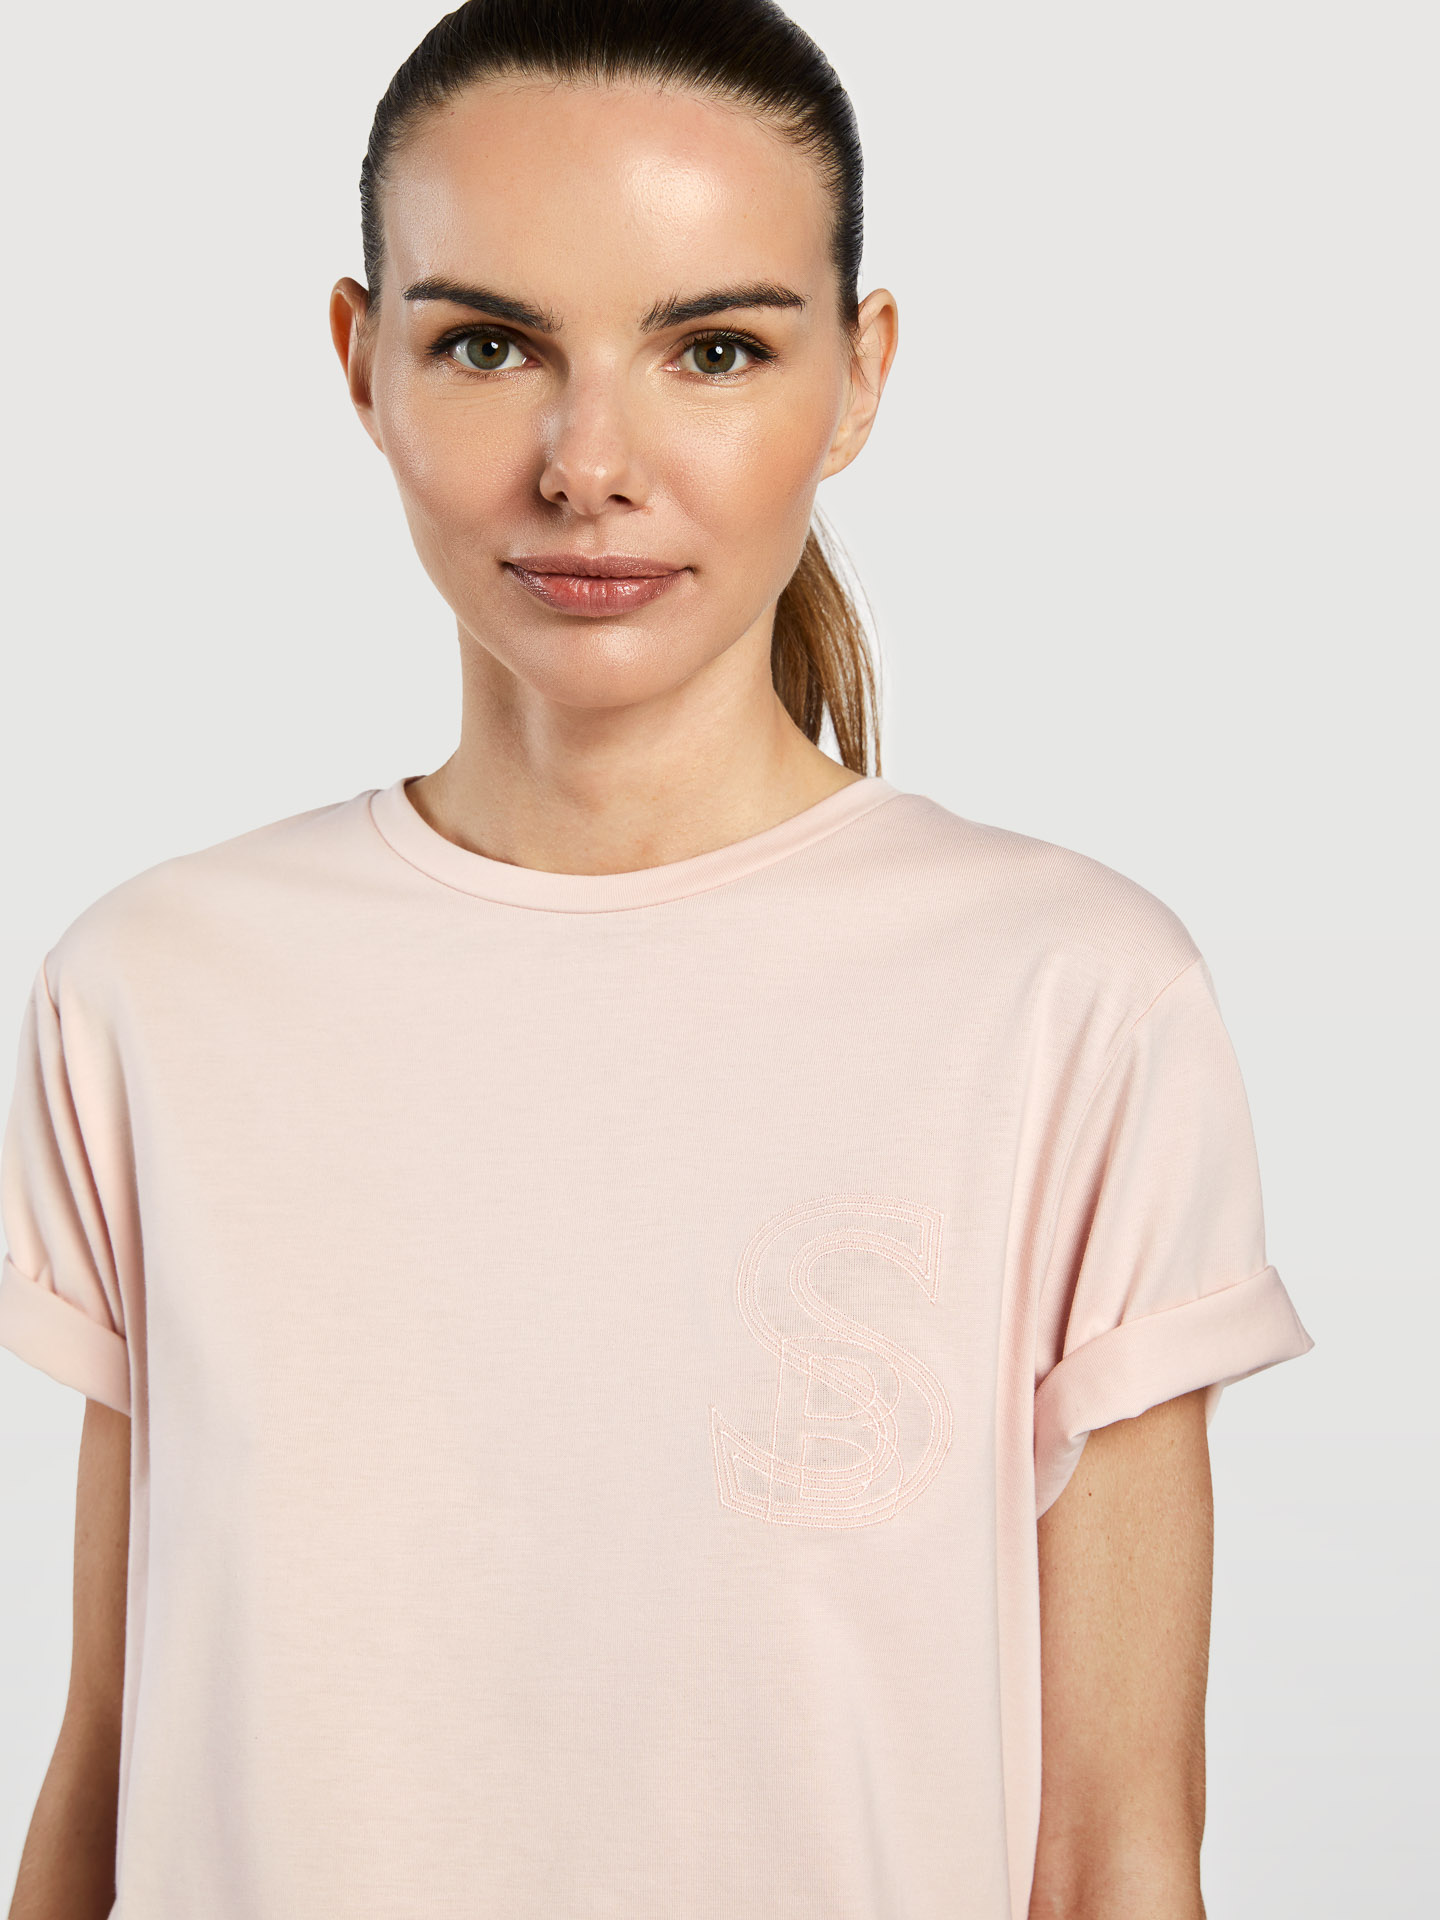 T-Shirt Light Pink Sport Woman